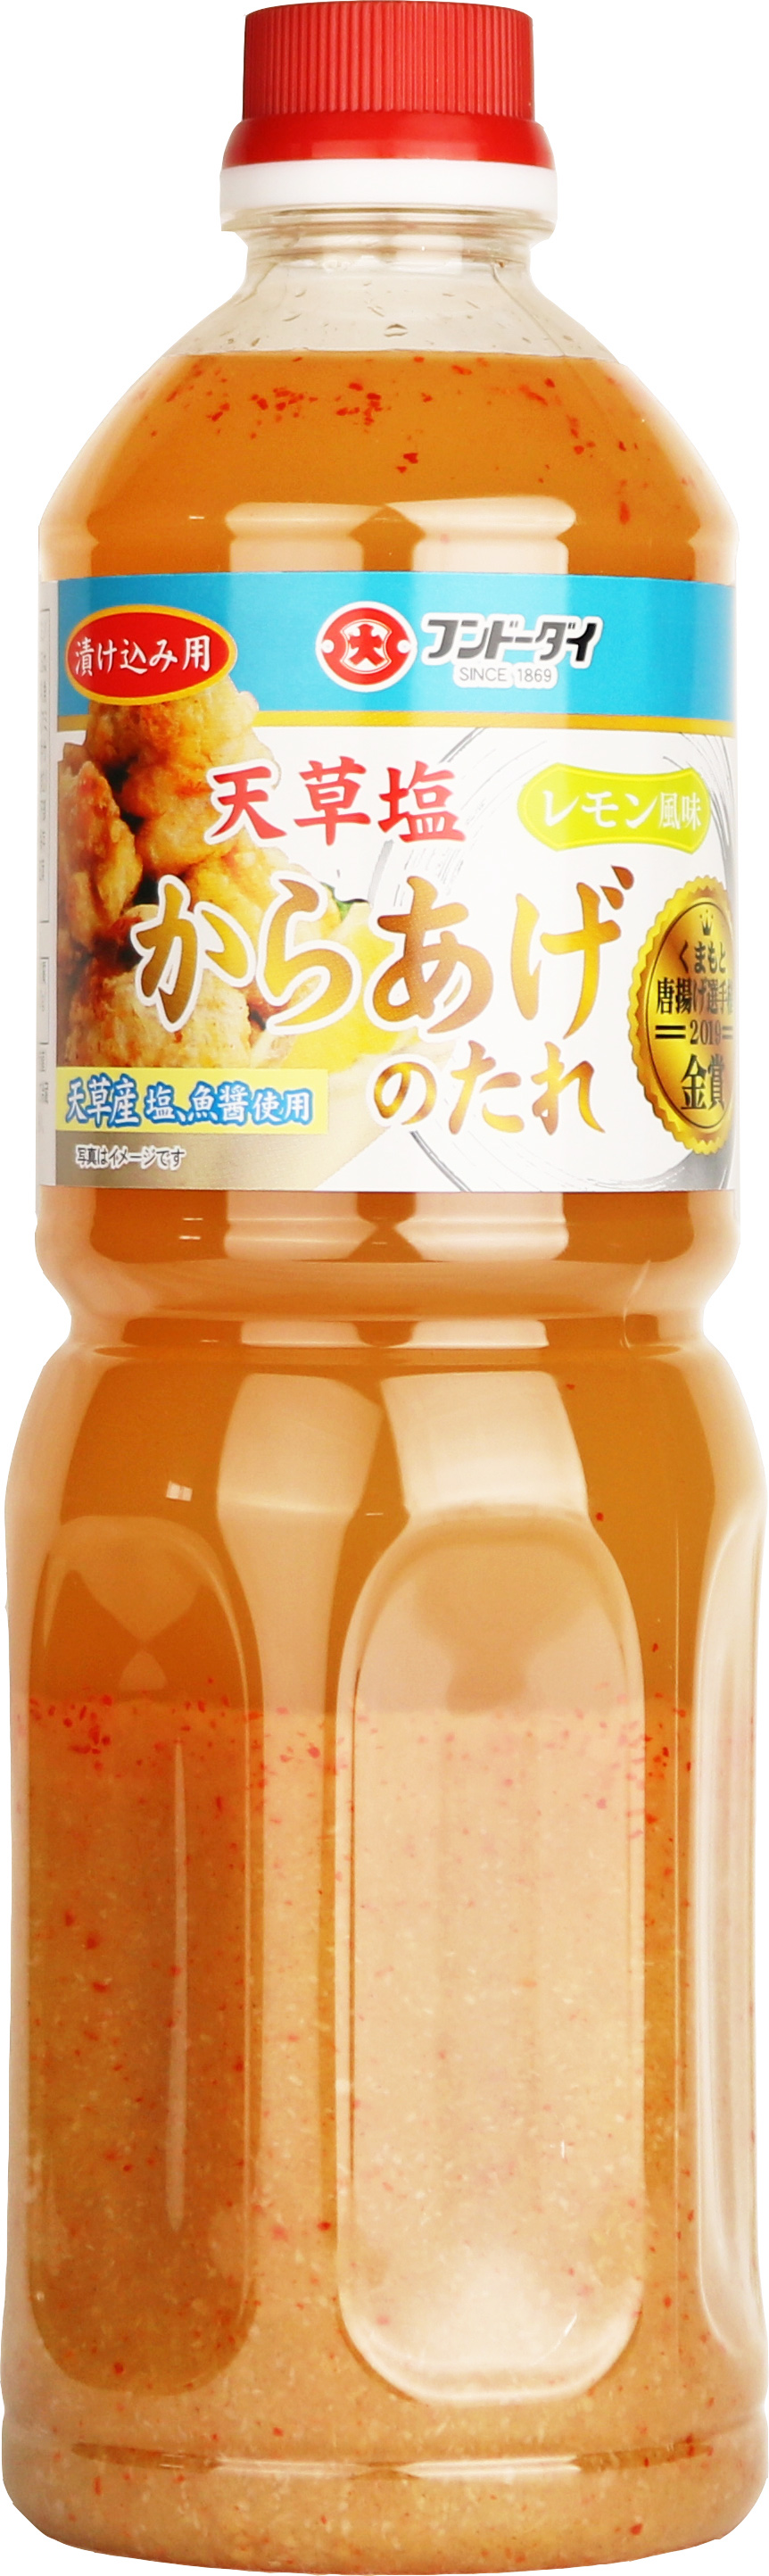 Amakusa Lemon Flavored Salt Karaage Sauce 1LP